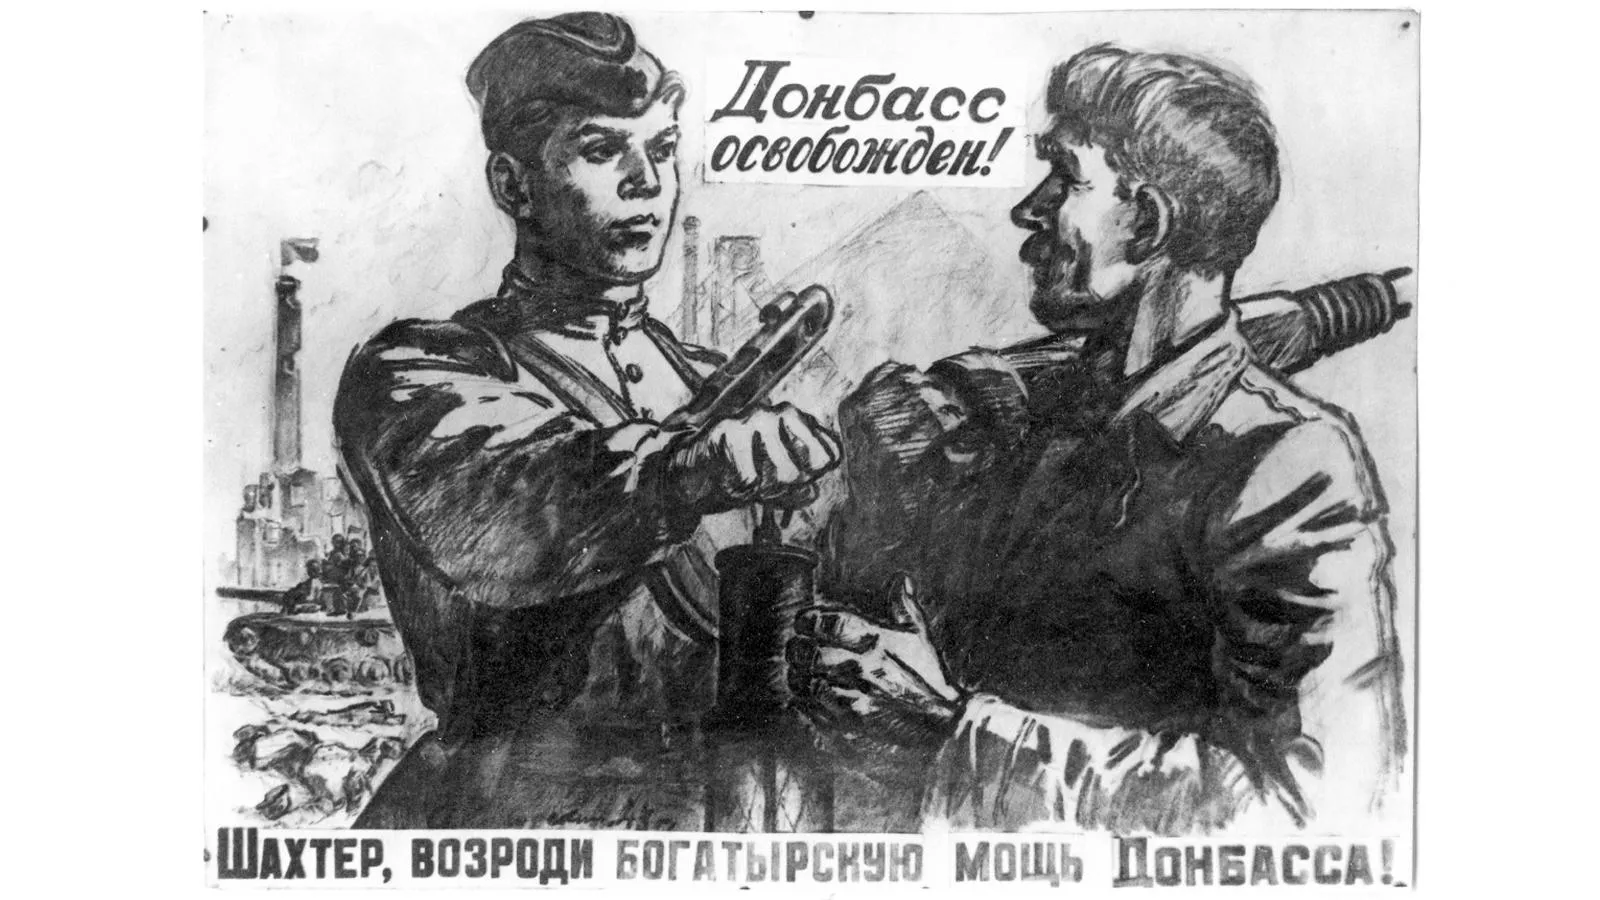 Плакат «Шахтер, возроди Донбасс!», художник А. Кокорекин, 1943 год